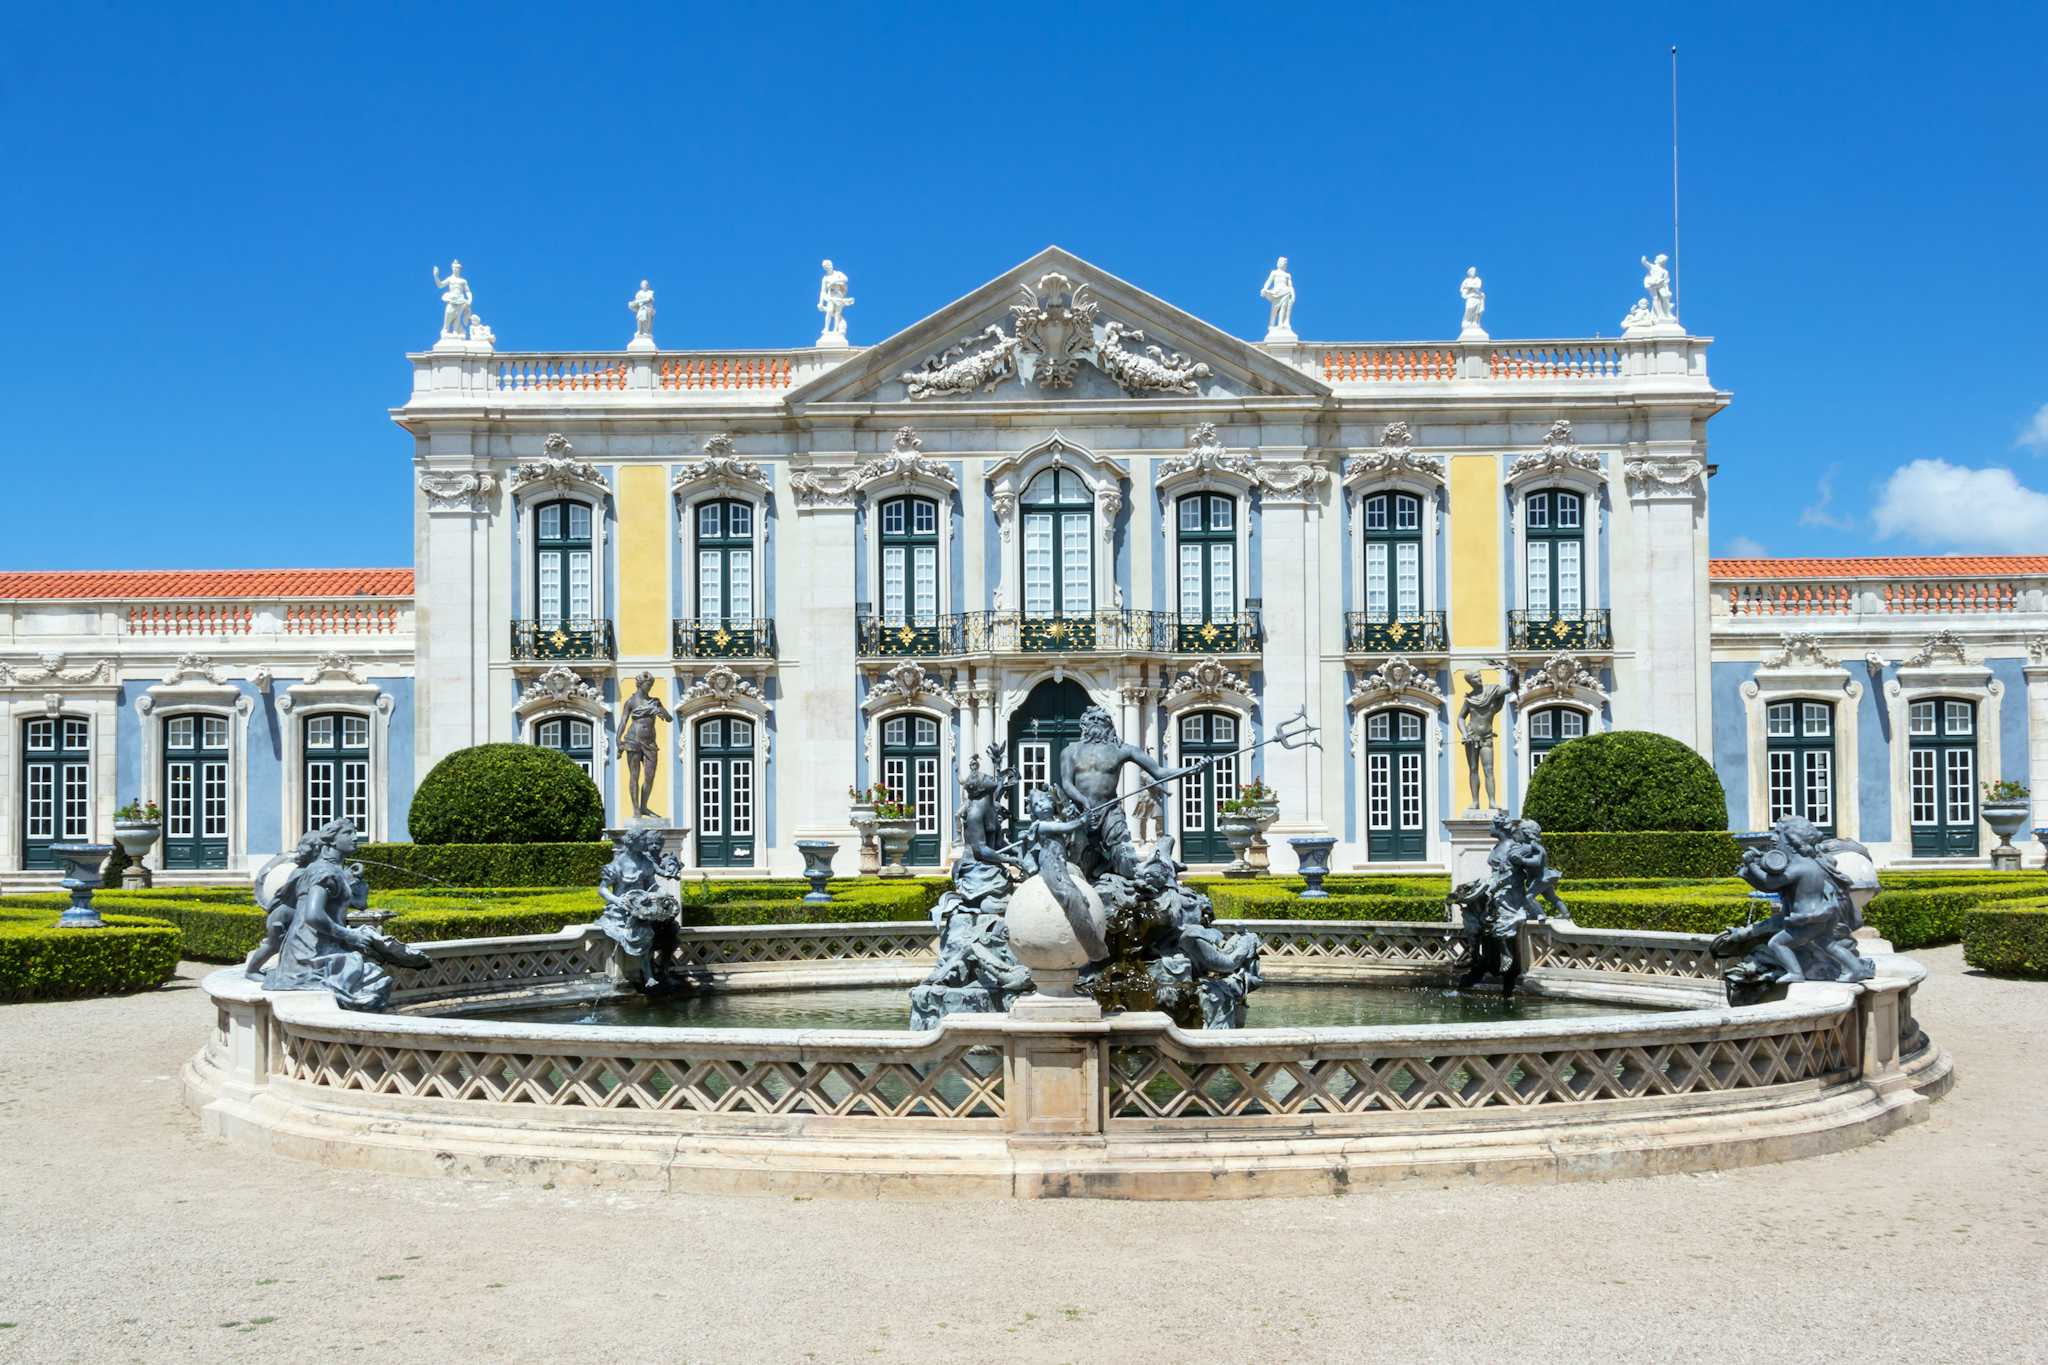 Queluz Palace and Gardens